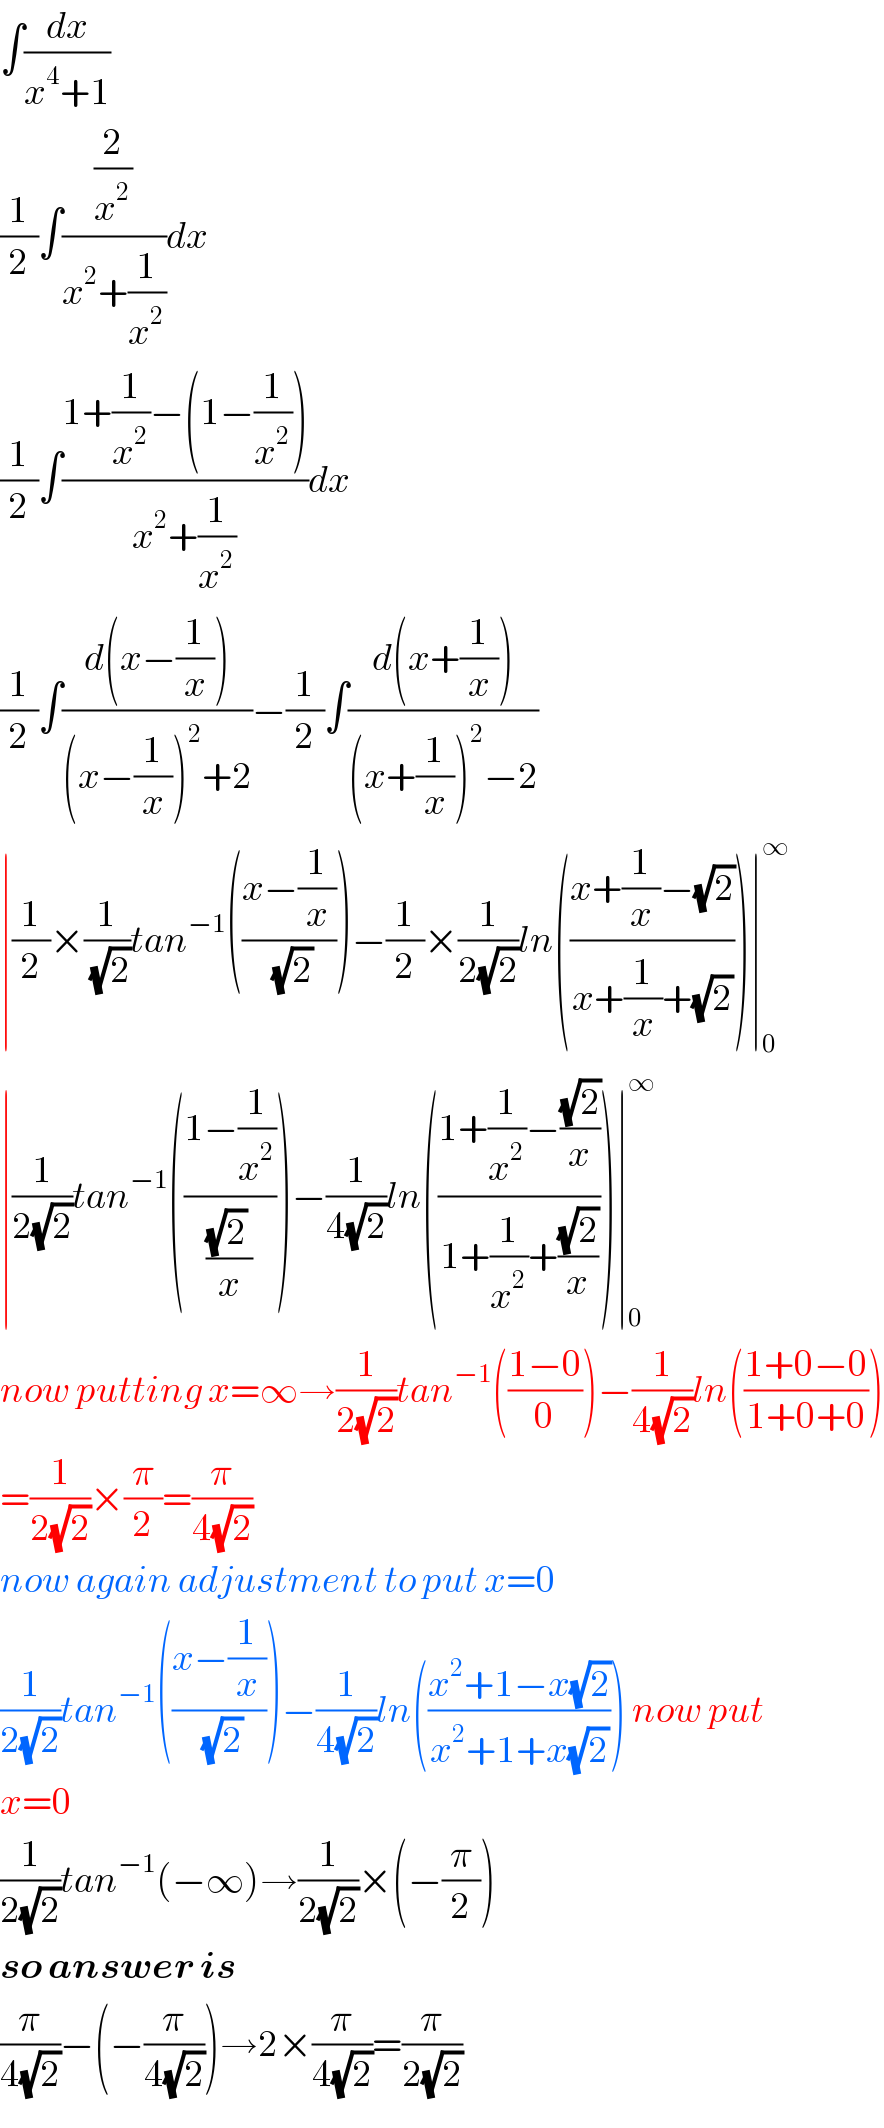 ∫(dx/(x^4 +1))  (1/2)∫((2/x^2 )/(x^2 +(1/x^2 )))dx  (1/2)∫((1+(1/x^2 )−(1−(1/x^2 )))/(x^2 +(1/x^2 )))dx  (1/2)∫((d(x−(1/x)))/((x−(1/x))^2 +2))−(1/2)∫((d(x+(1/x)))/((x+(1/x))^2 −2))  ∣(1/2)×(1/(√2))tan^(−1) (((x−(1/x))/(√2)))−(1/2)×(1/(2(√2)))ln(((x+(1/x)−(√2))/(x+(1/x)+(√2))))∣_0 ^∞   ∣(1/(2(√2)))tan^(−1) (((1−(1/x^2 ))/(((√2) )/x)))−(1/(4(√2)))ln(((1+(1/x^2 )−((√2)/x))/(1+(1/x^2 )+((√2)/x))))∣_0 ^∞   now putting x=∞→(1/(2(√2)))tan^(−1) (((1−0)/0))−(1/(4(√2)))ln(((1+0−0)/(1+0+0)))  =(1/(2(√2)))×(π/2)=(π/(4(√2)))  now again adjustment to put x=0  (1/(2(√2)))tan^(−1) (((x−(1/x))/(√2)))−(1/(4(√2)))ln(((x^2 +1−x(√2))/(x^2 +1+x(√2)))) now put  x=0  (1/(2(√2)))tan^(−1) (−∞)→(1/(2(√2)))×(−(π/2))  so answer is  (π/(4(√2)))−(−(π/(4(√2))))→2×(π/(4(√2)))=(π/(2(√2)))  